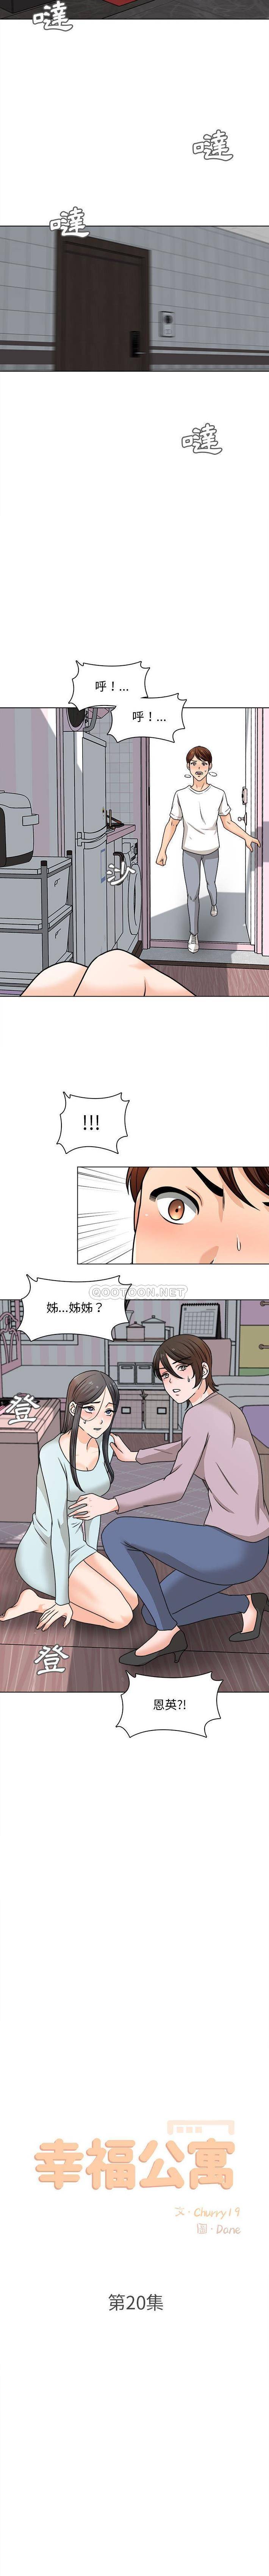 韩国污漫画 幸福公寓 第20话 8